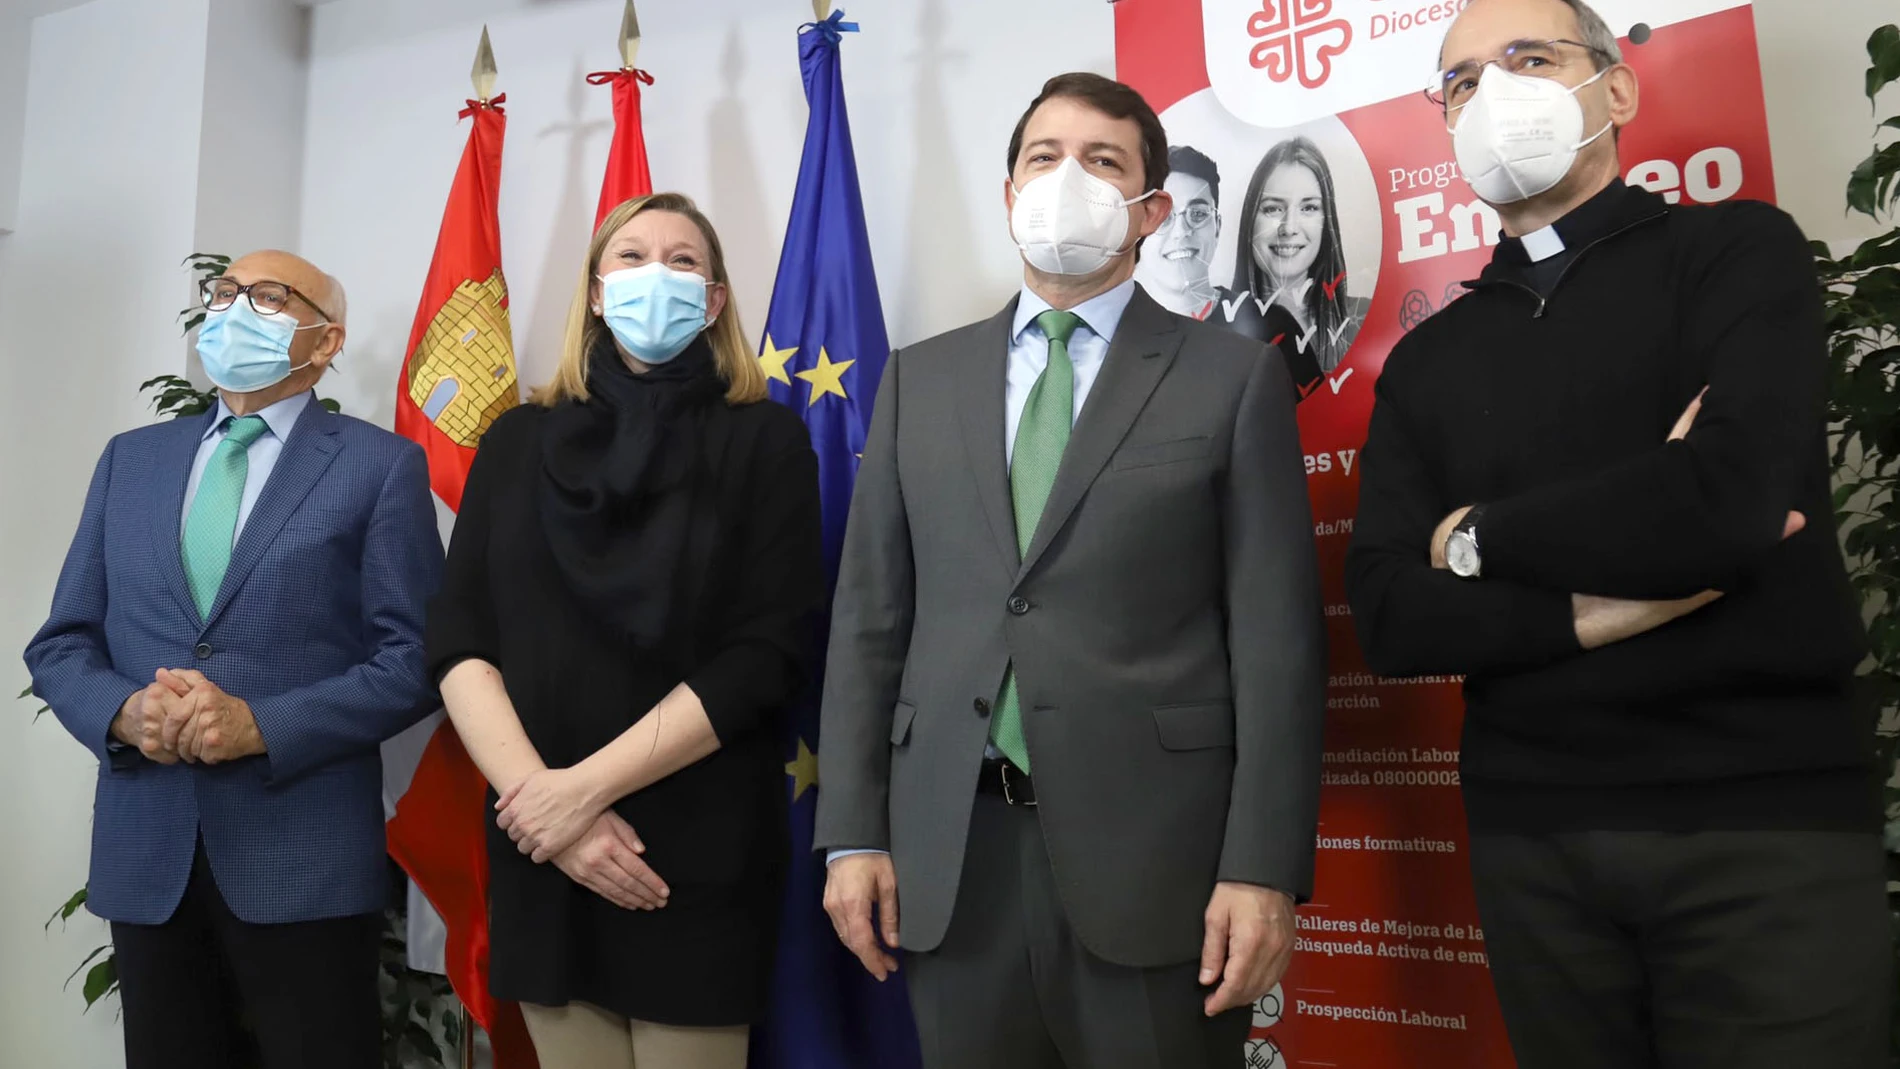 El presidente de la Junta de Castilla y León, Alfonso Fernández Mañueco, junto a la consejera de Familia, Isabel Blanco, se reúne con la plataforma del Tercer Sector de Castilla y León